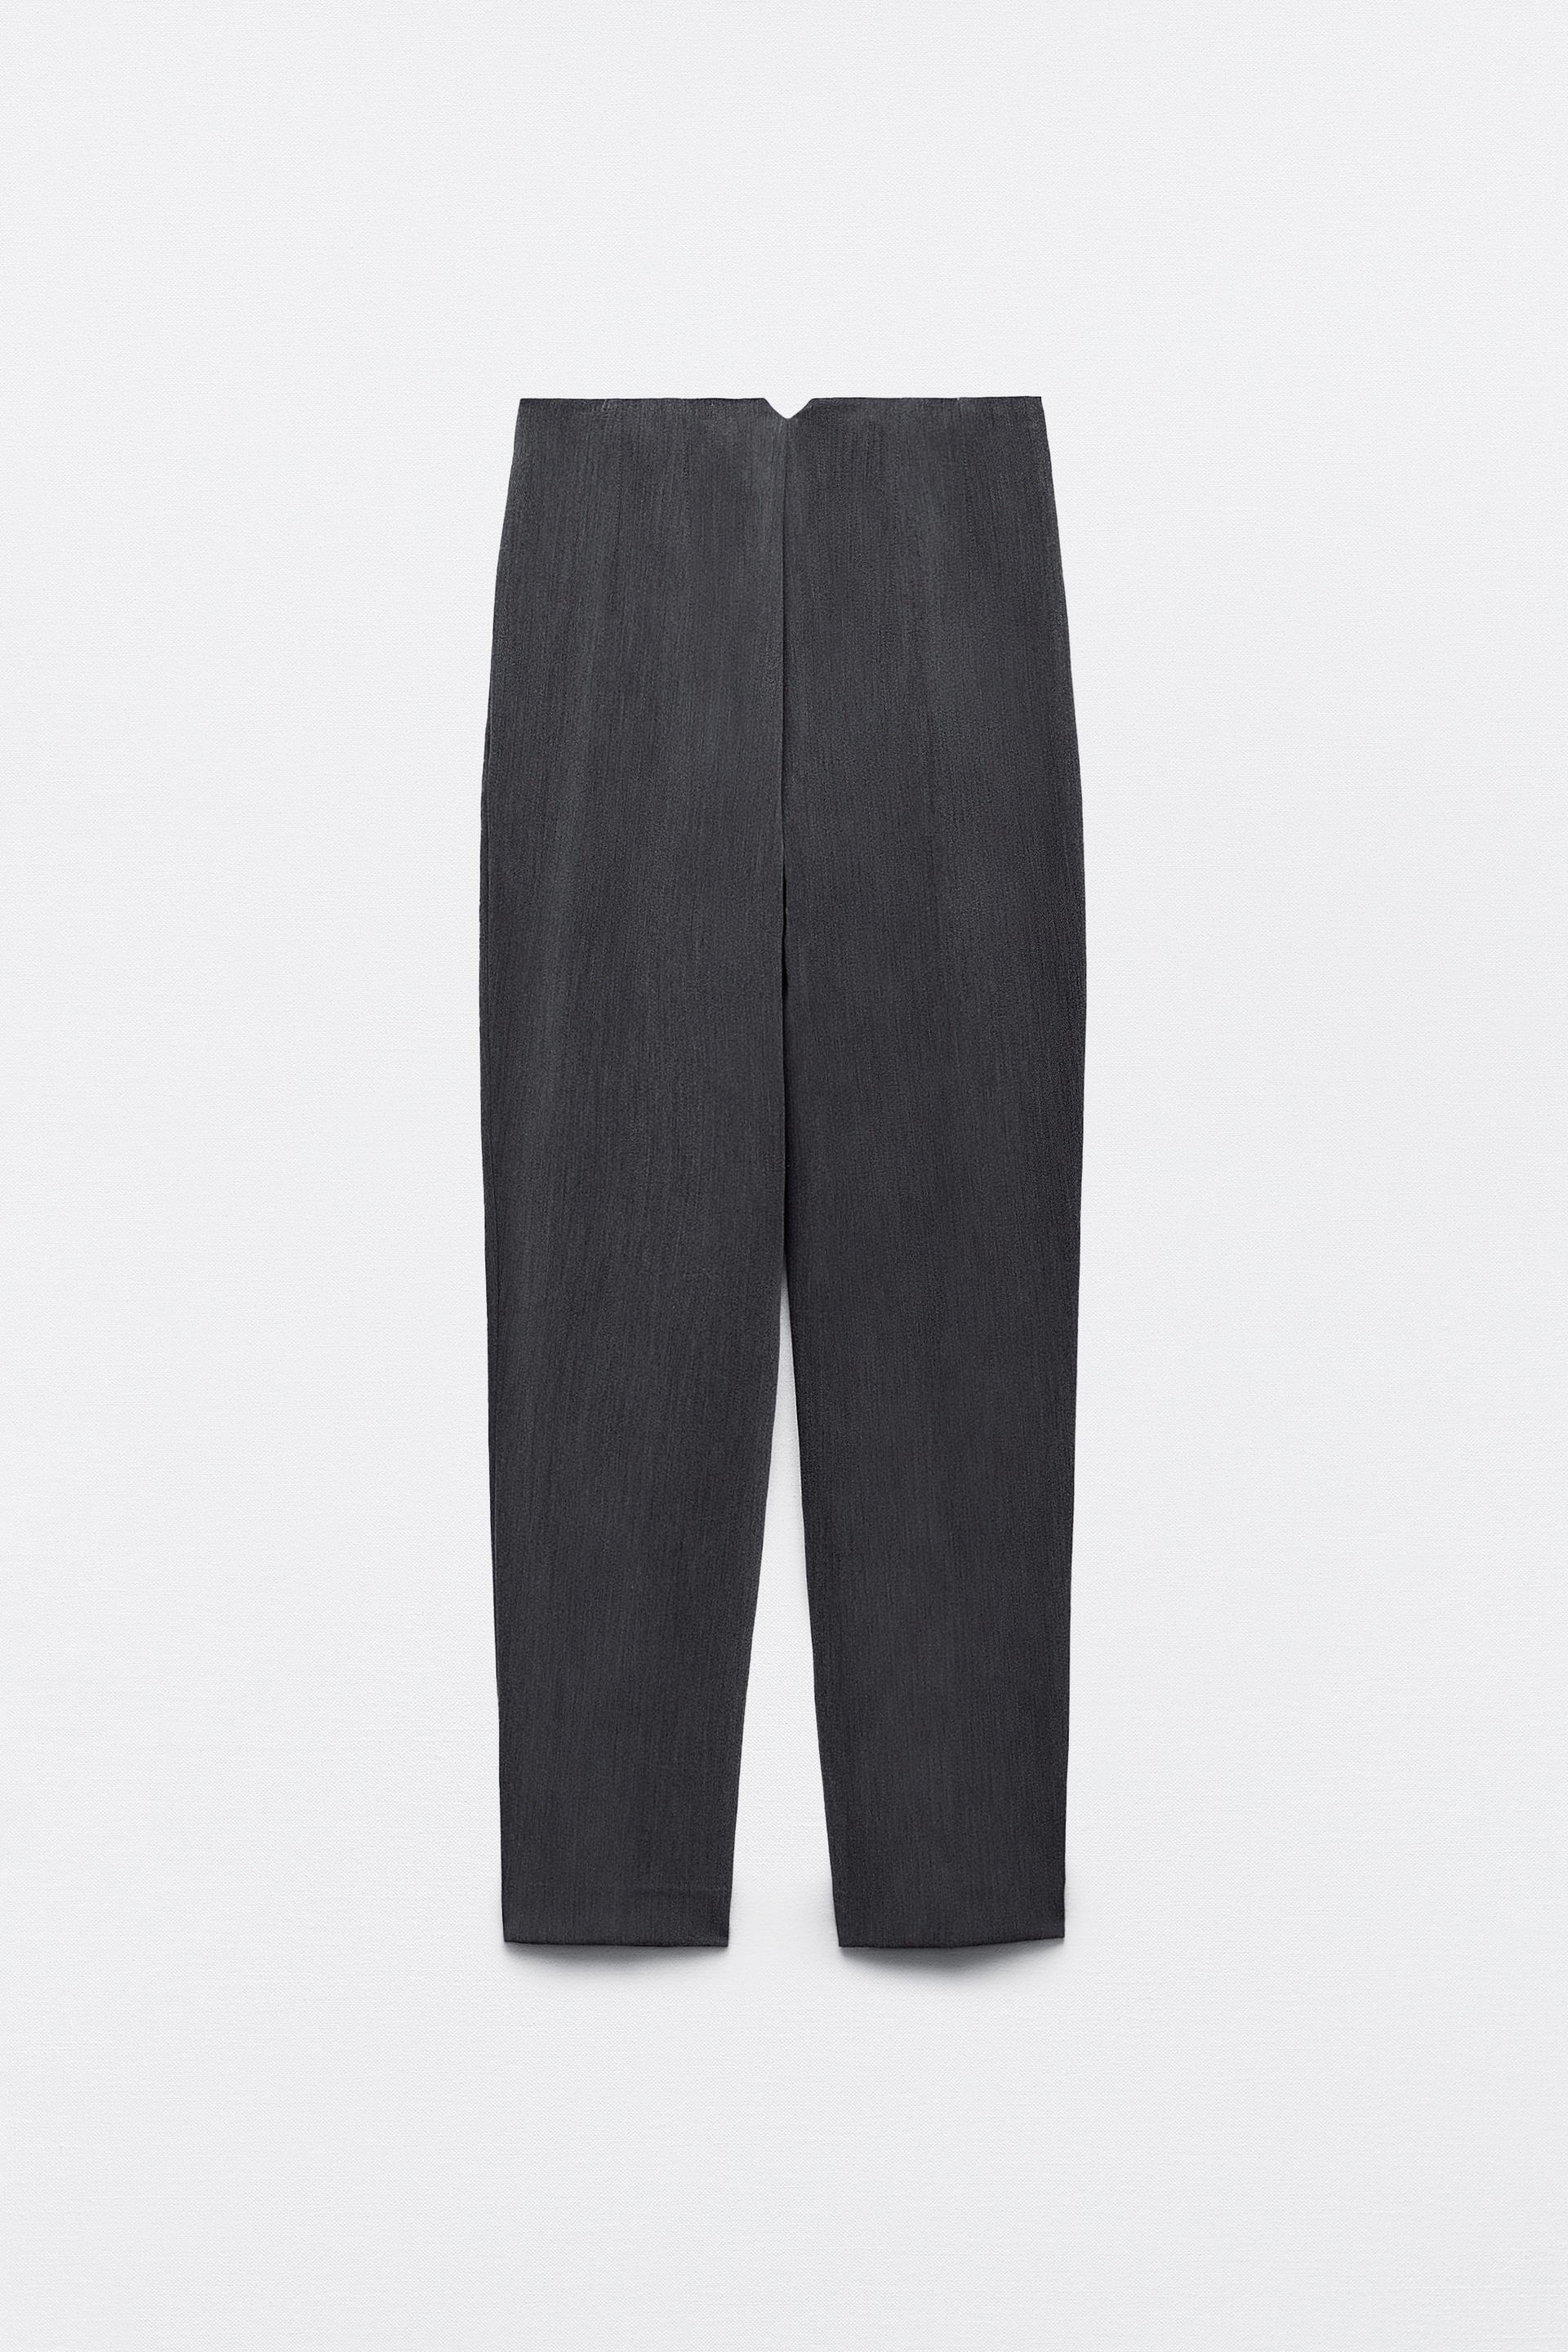 LYSHOP, Pantalon Taille Haute - Zara - Femme